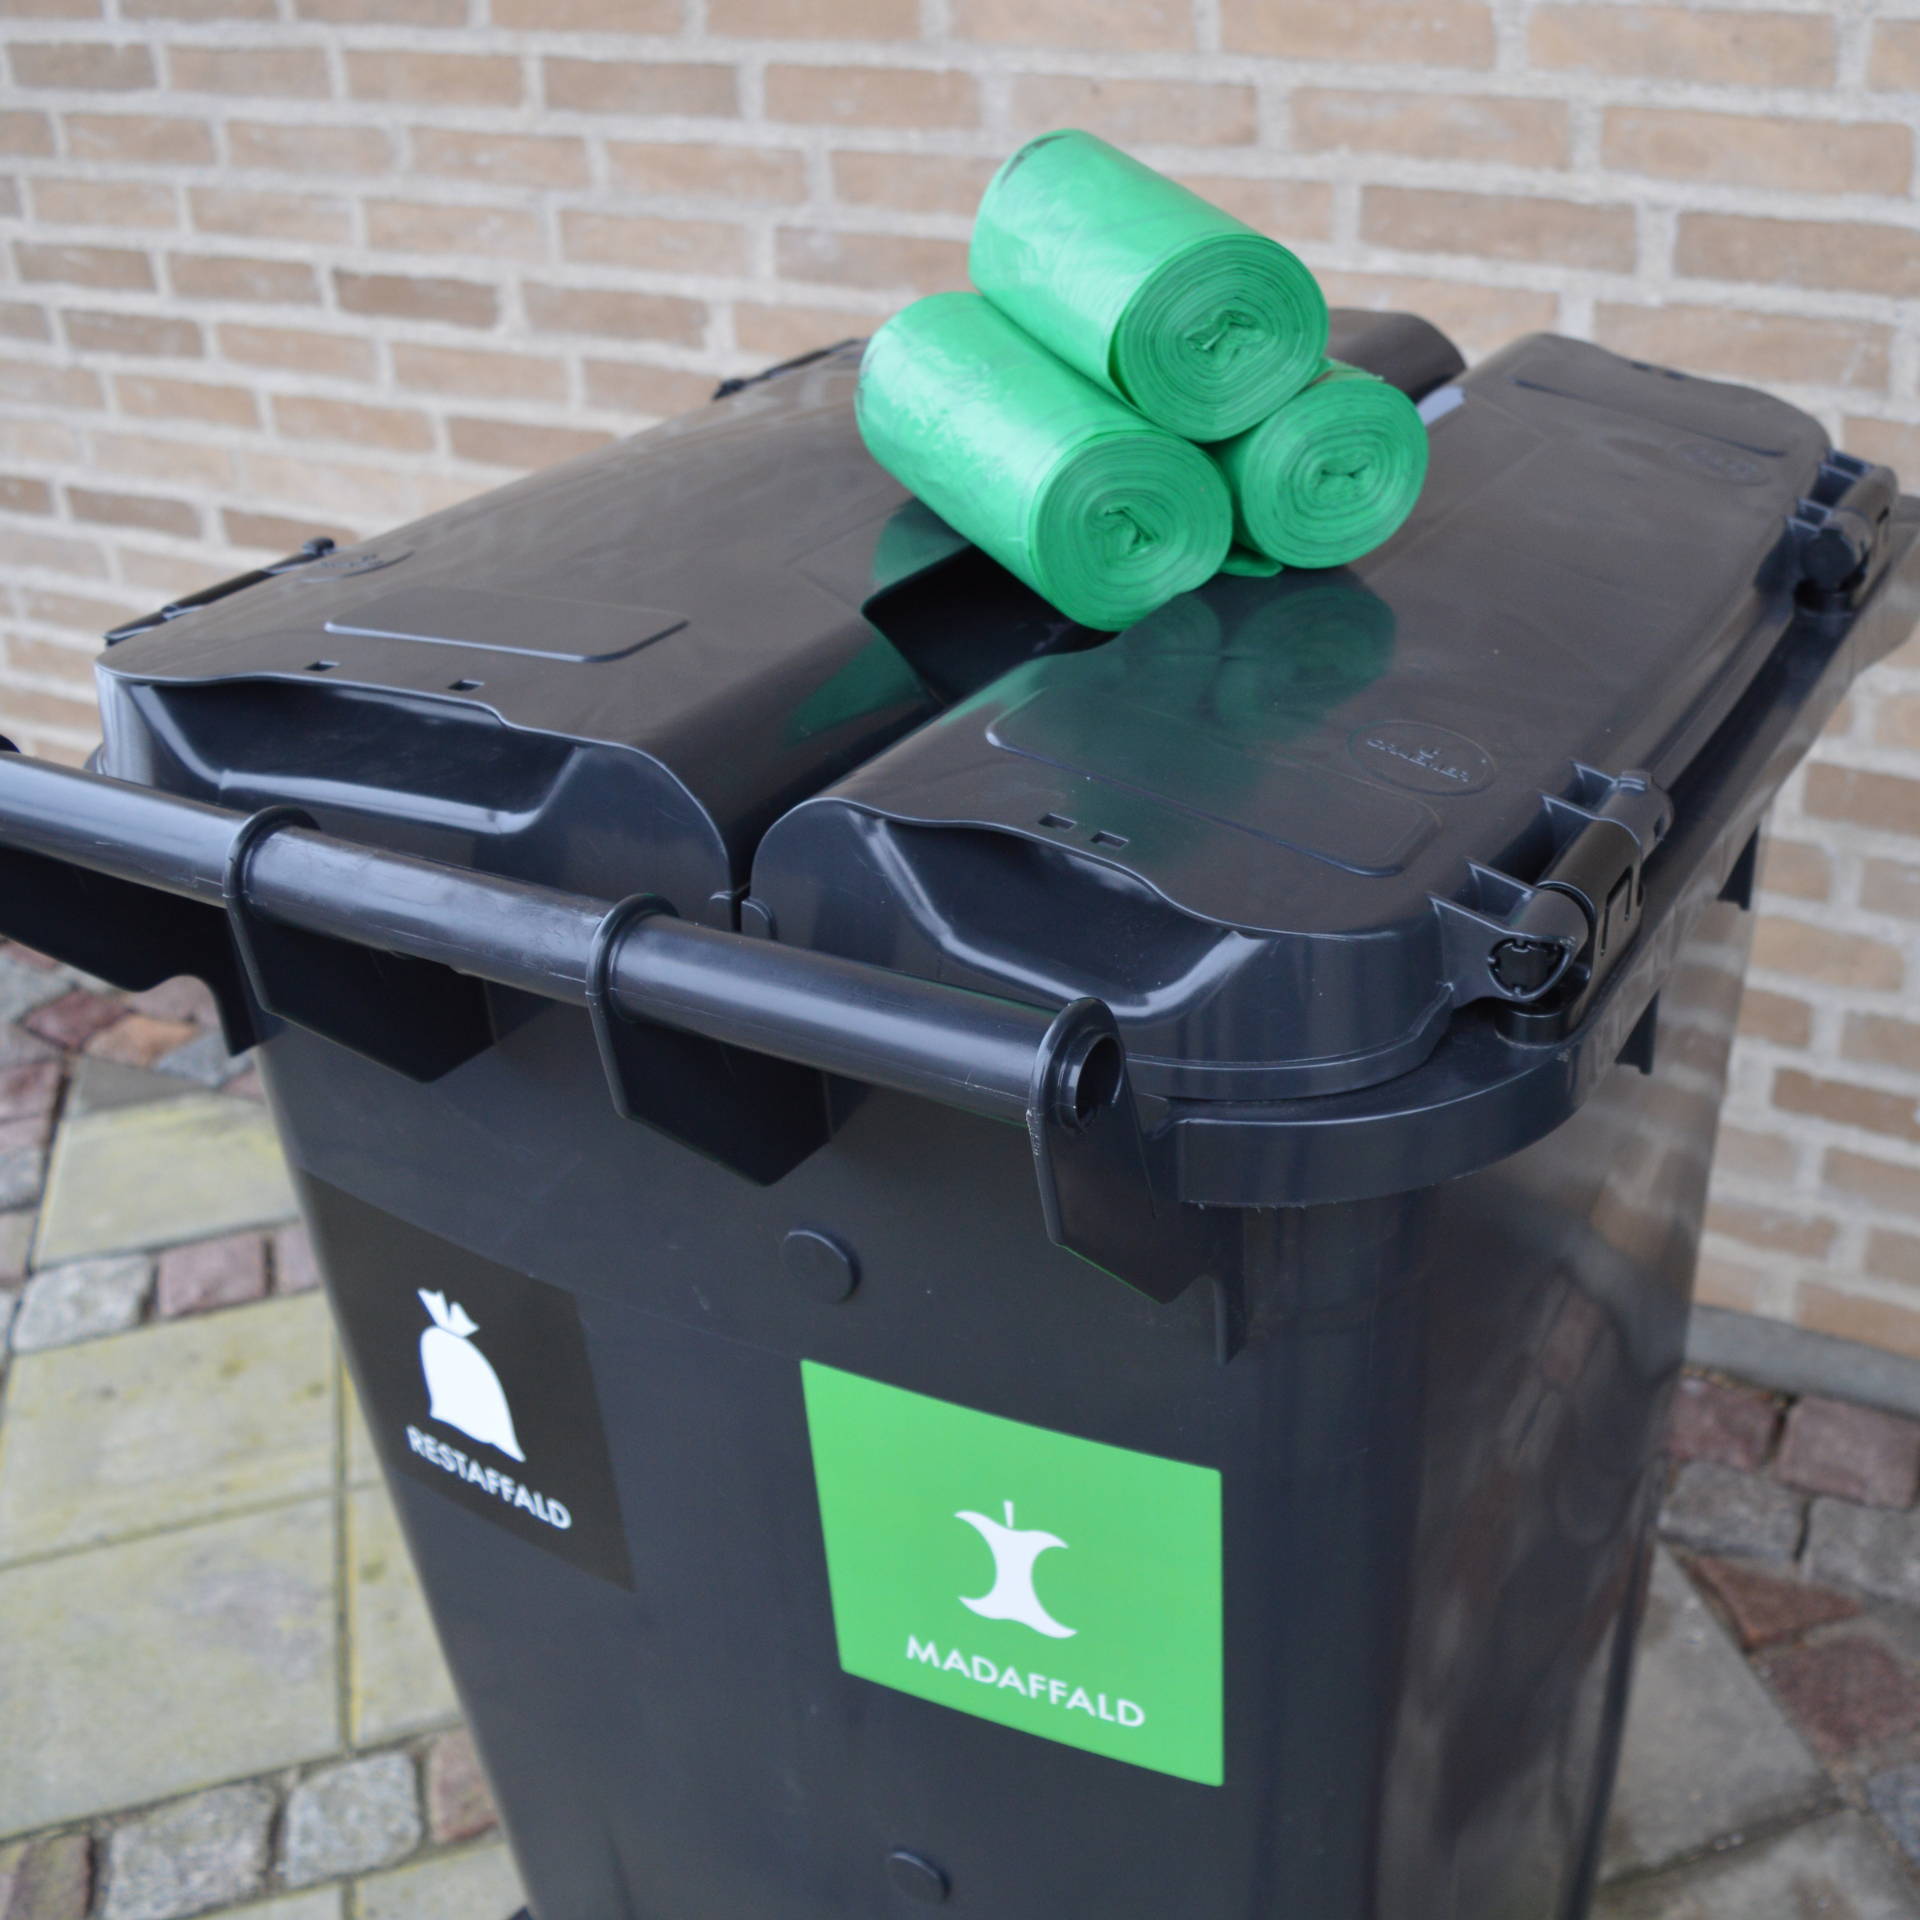 tre ruller grønne affaldsposer ligger ovenpå låget af en sort affaldsbeholder